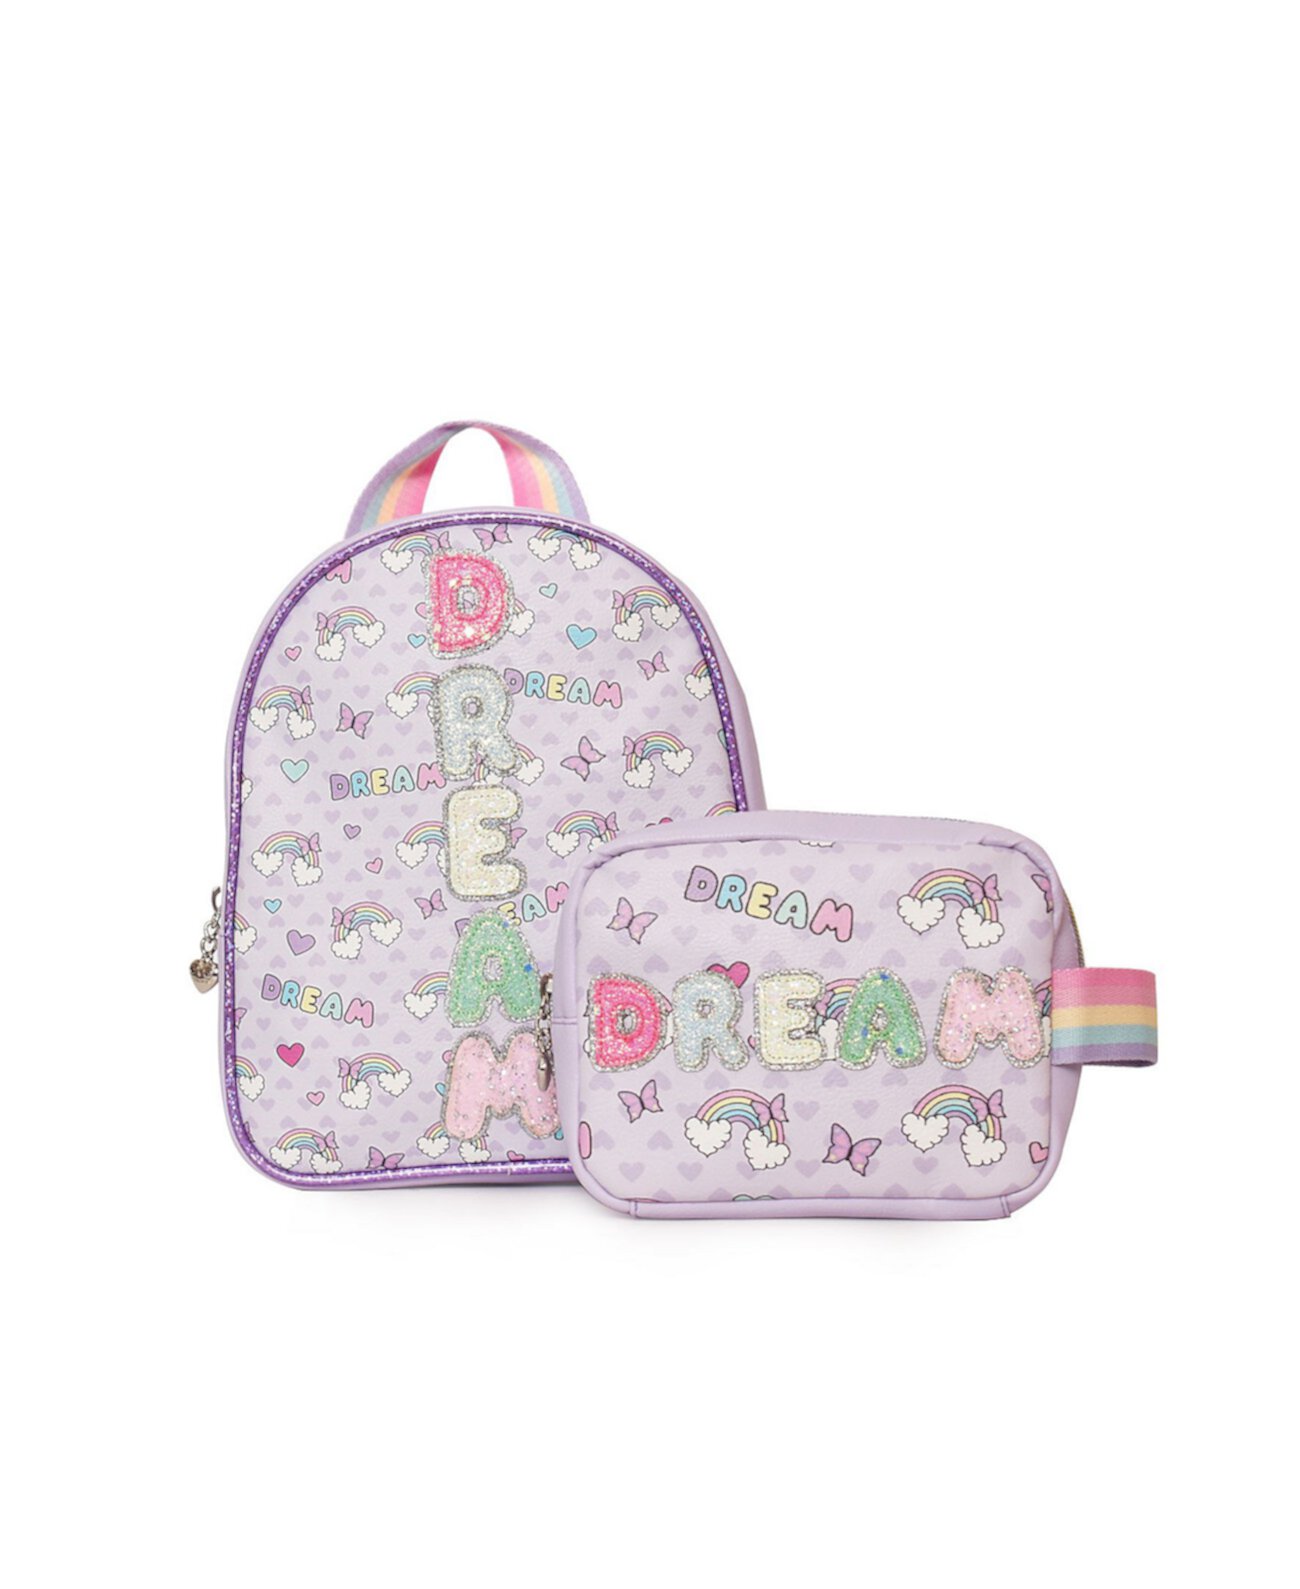 Рюкзак и сумка Big Girls Dream Bubble OMG! Accessories